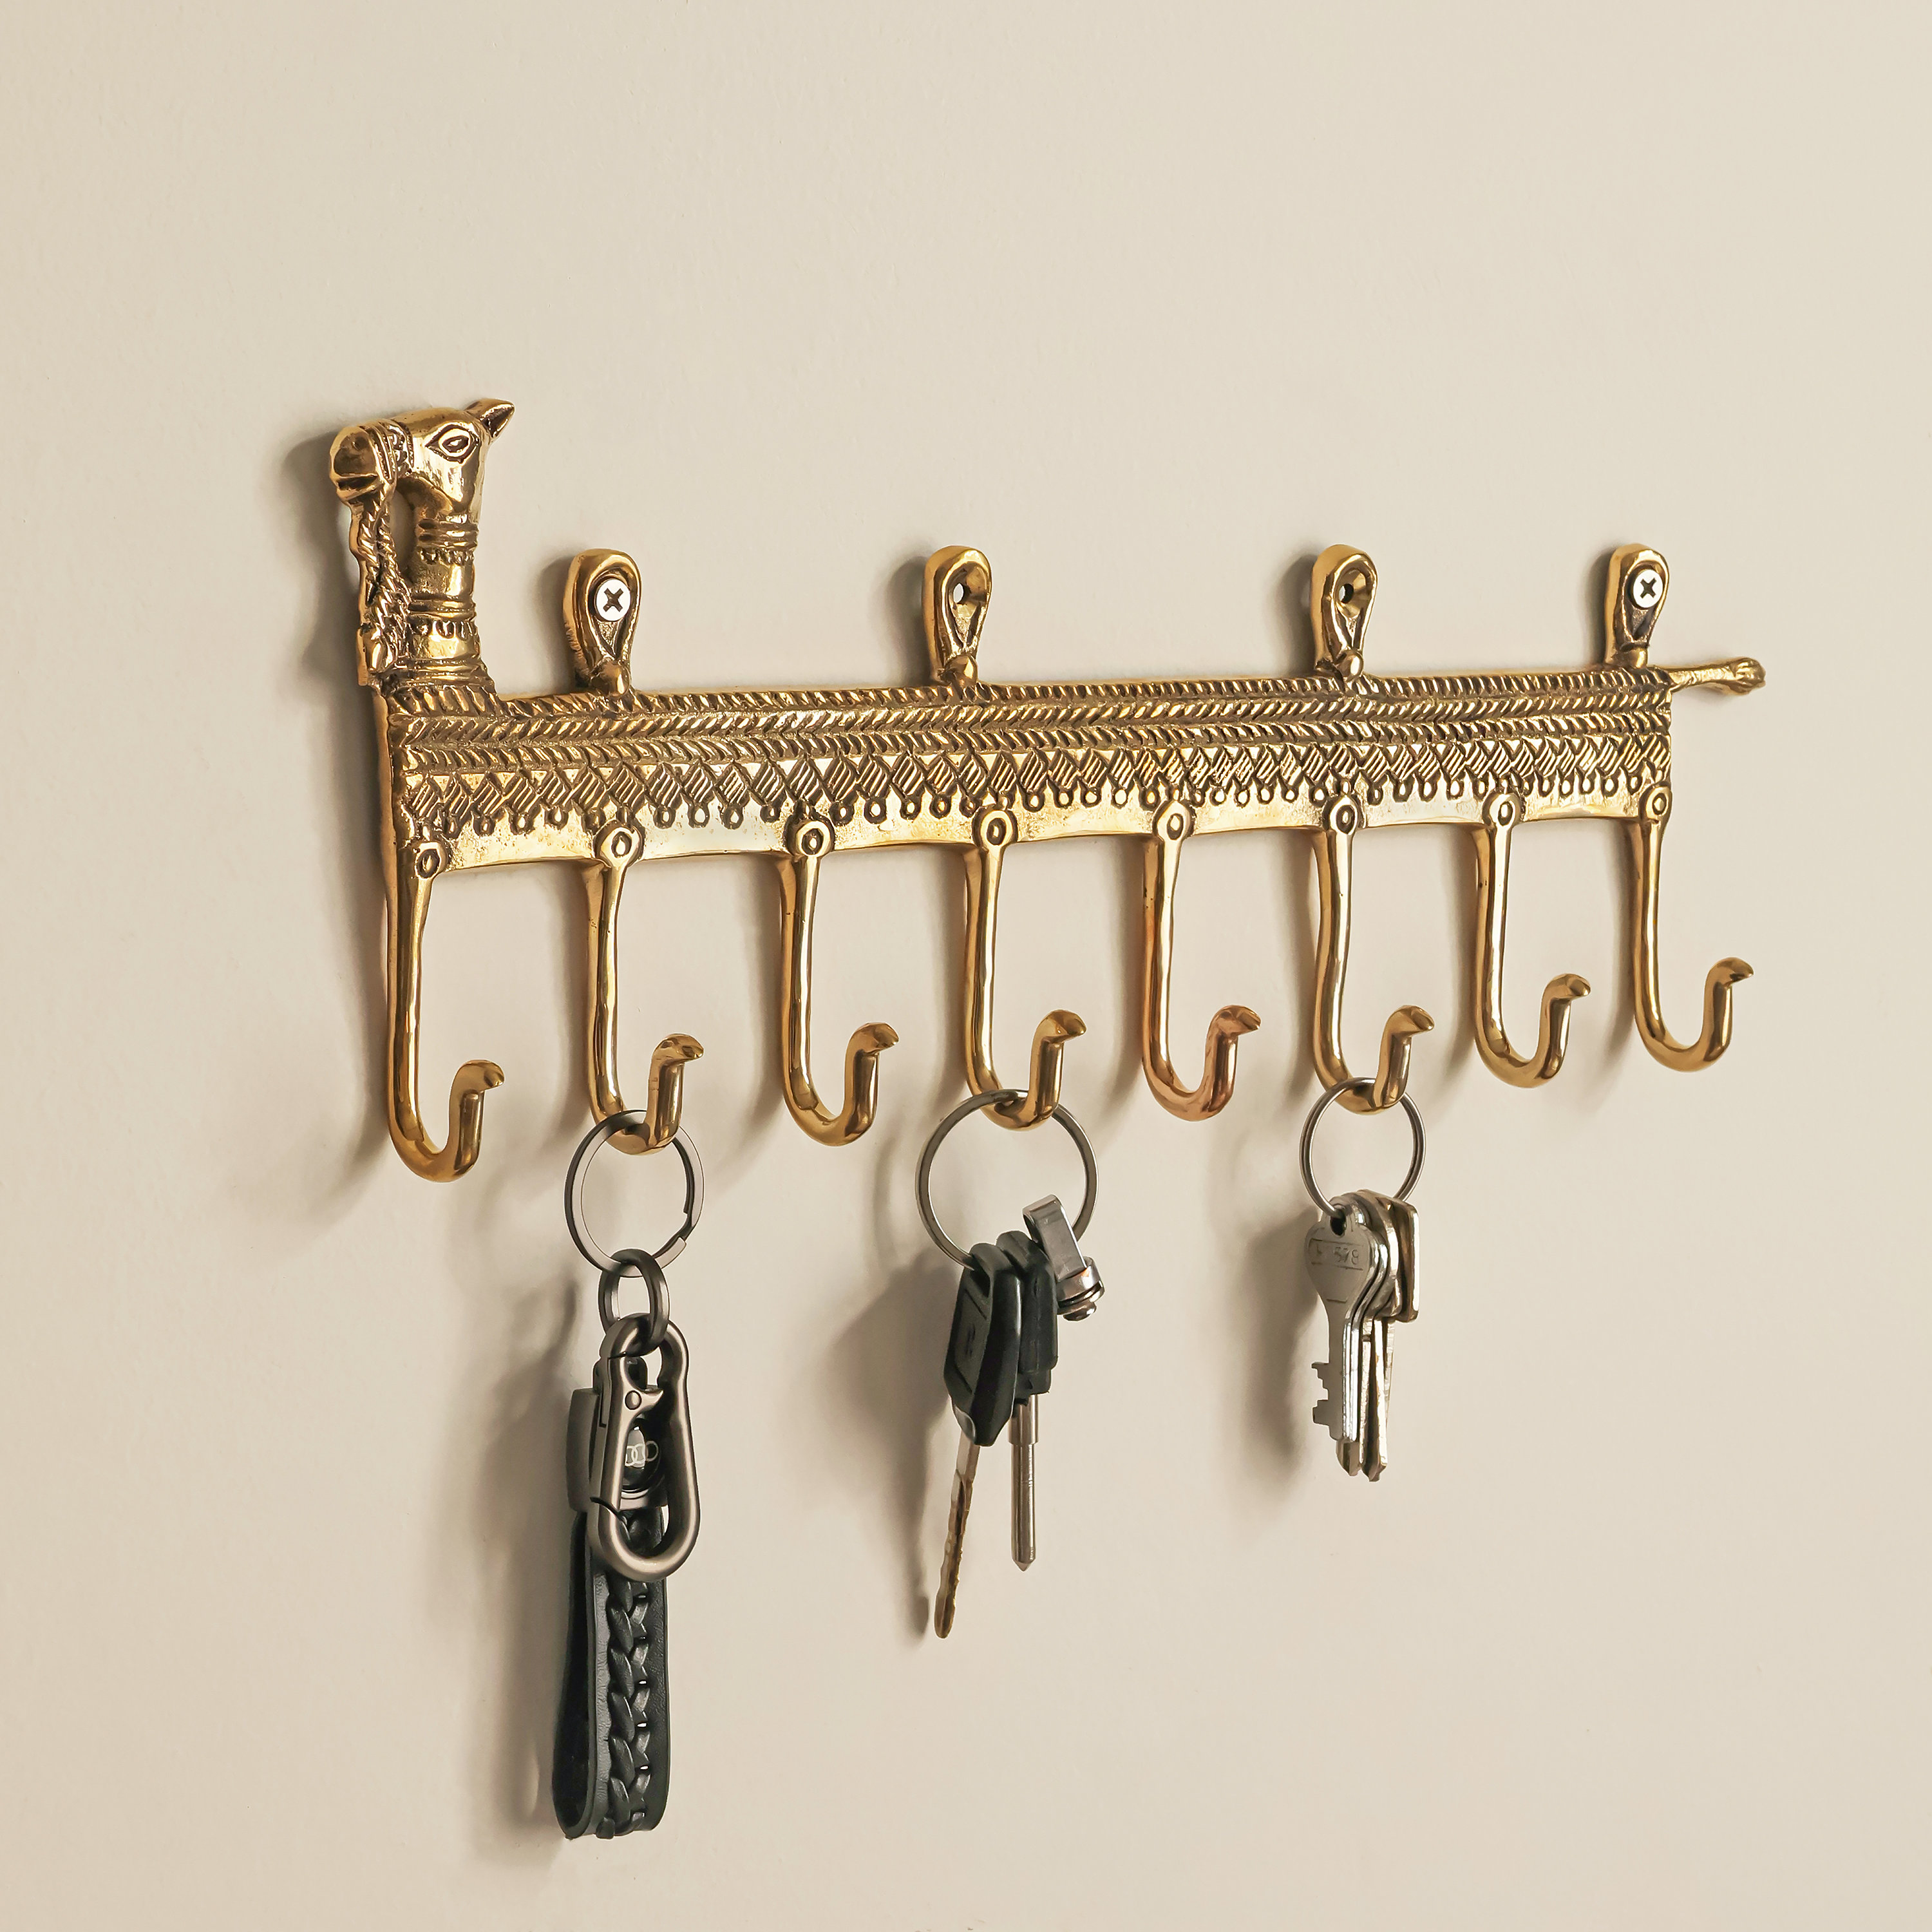 Brass Wall Hook, Key Hook for Wall, Decorative Hooks, Key Hook Camel, Coat  Hangers, Vintage Brass Wall Hook, Towel Hook Holder, 8 Hooks 